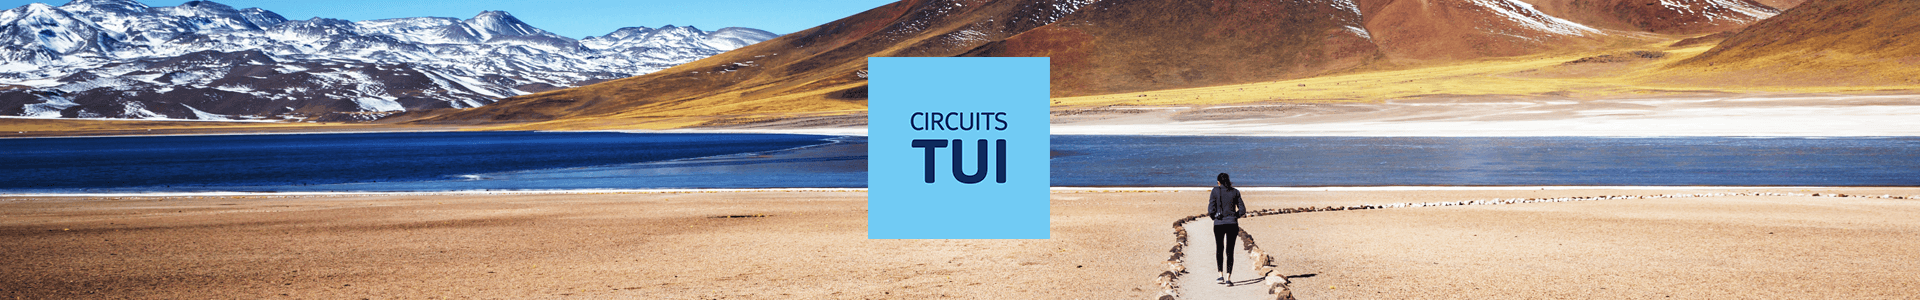 Circuits TUI - TUI